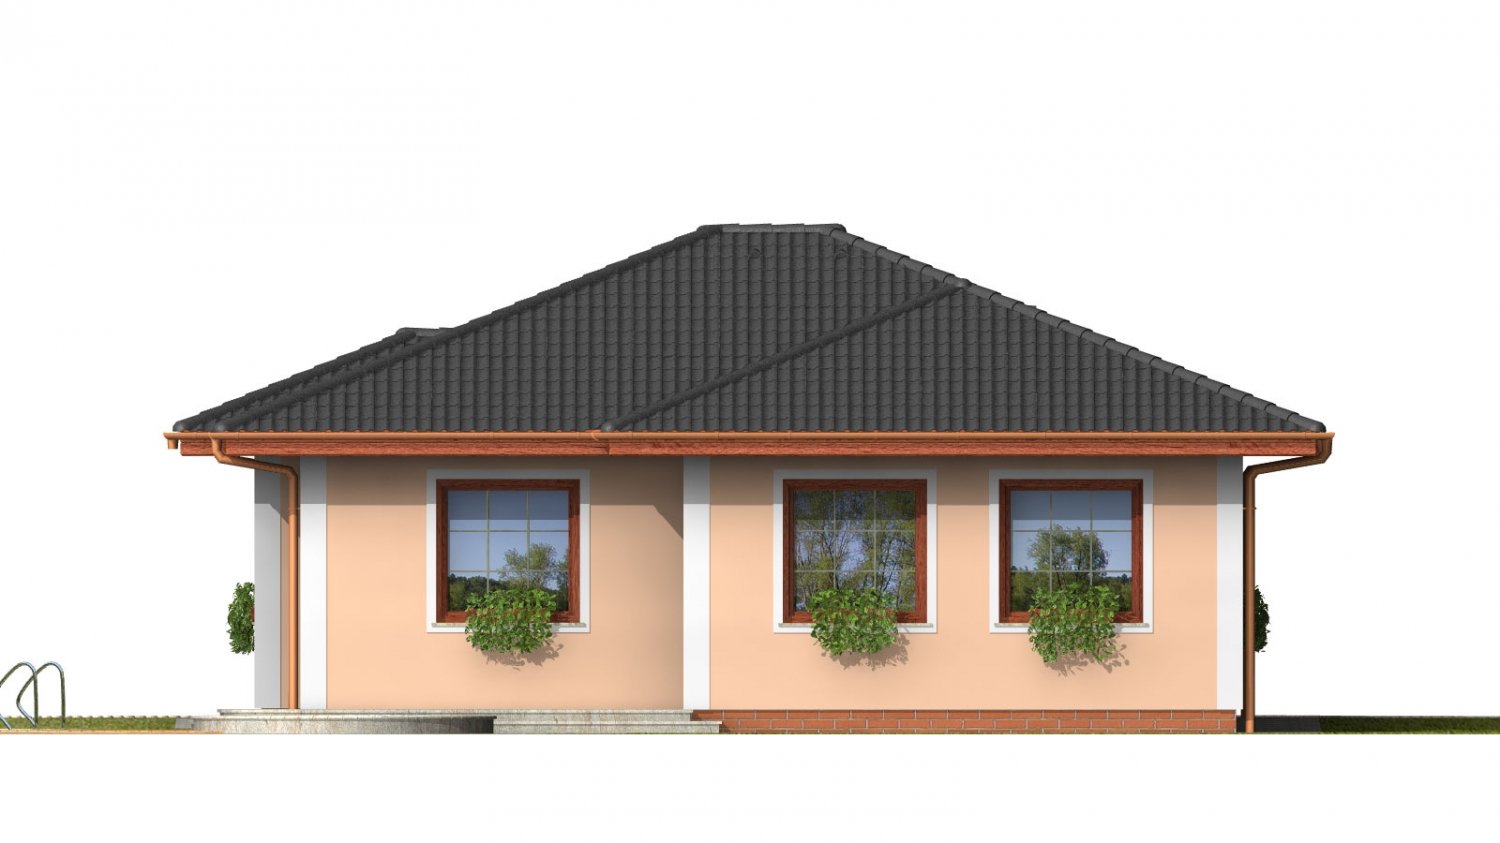 Pohľad 3. - Menší projekt domu s valbovou střechou.